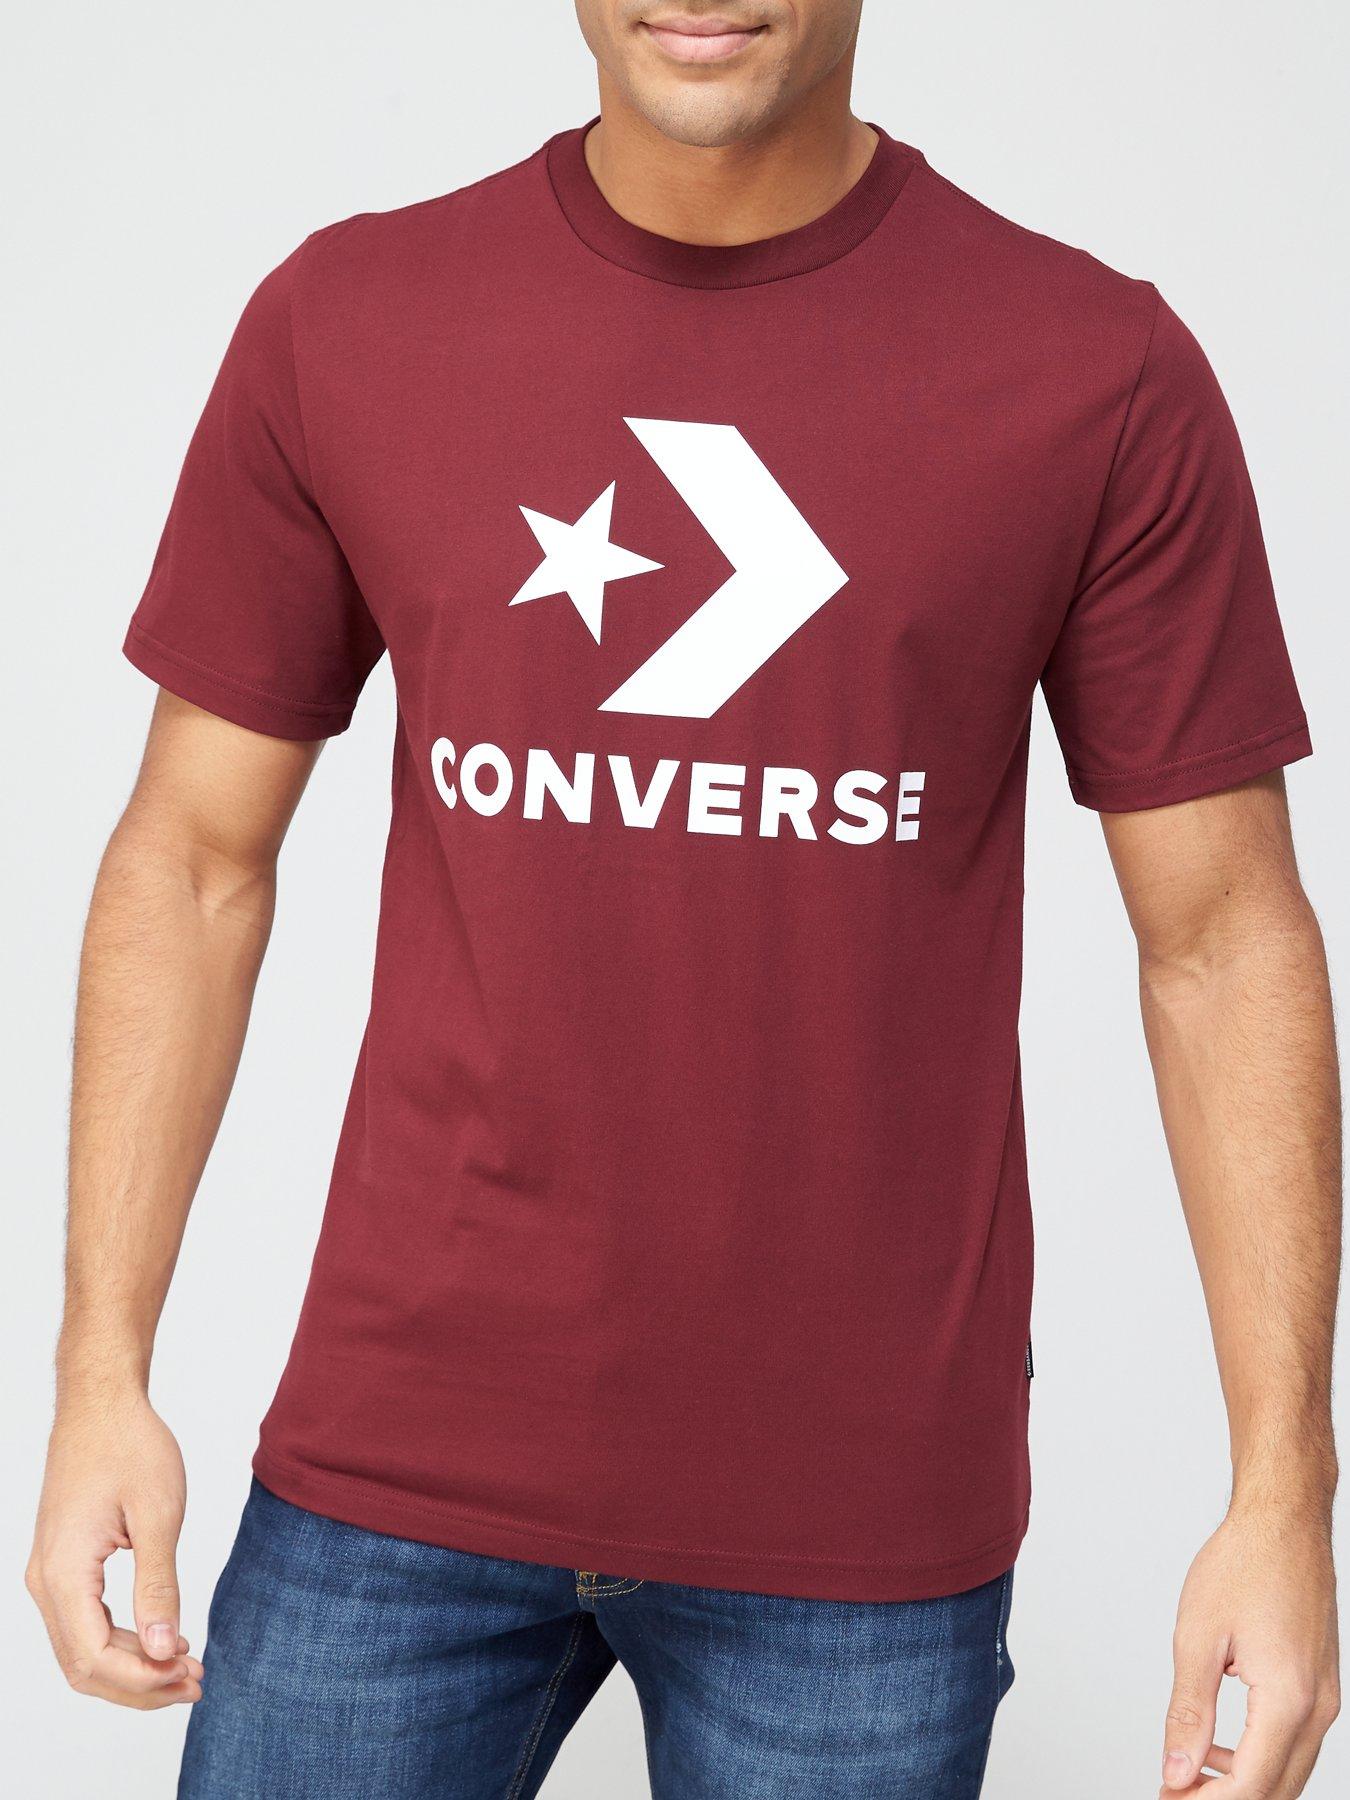 converse clothing uk